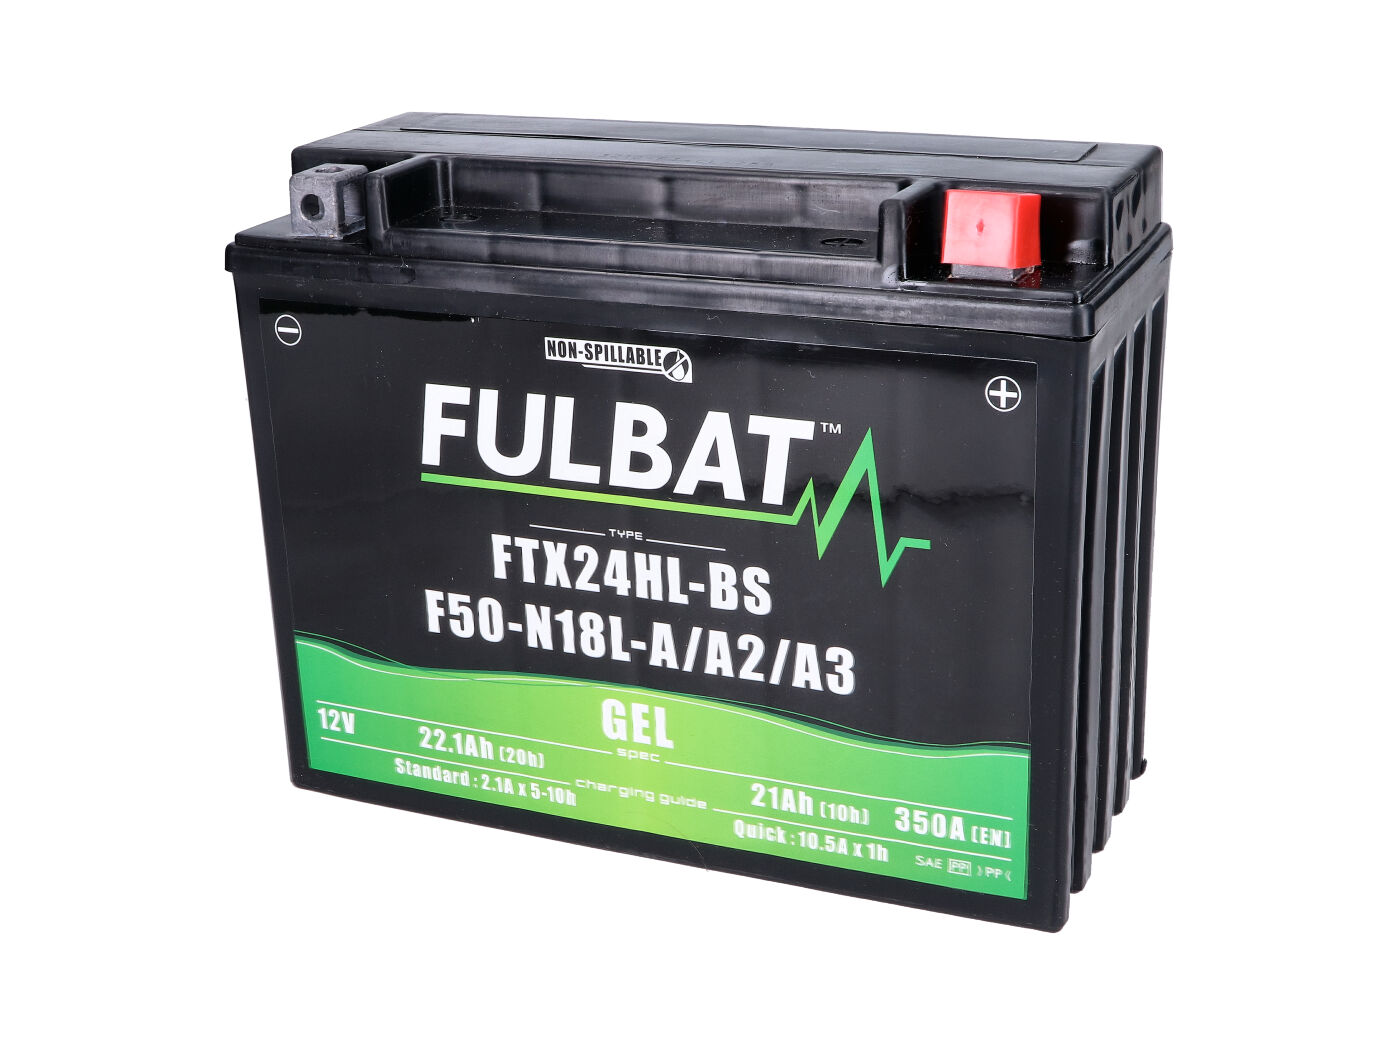 Fulbat FTX24HL-BS GEL Batterie